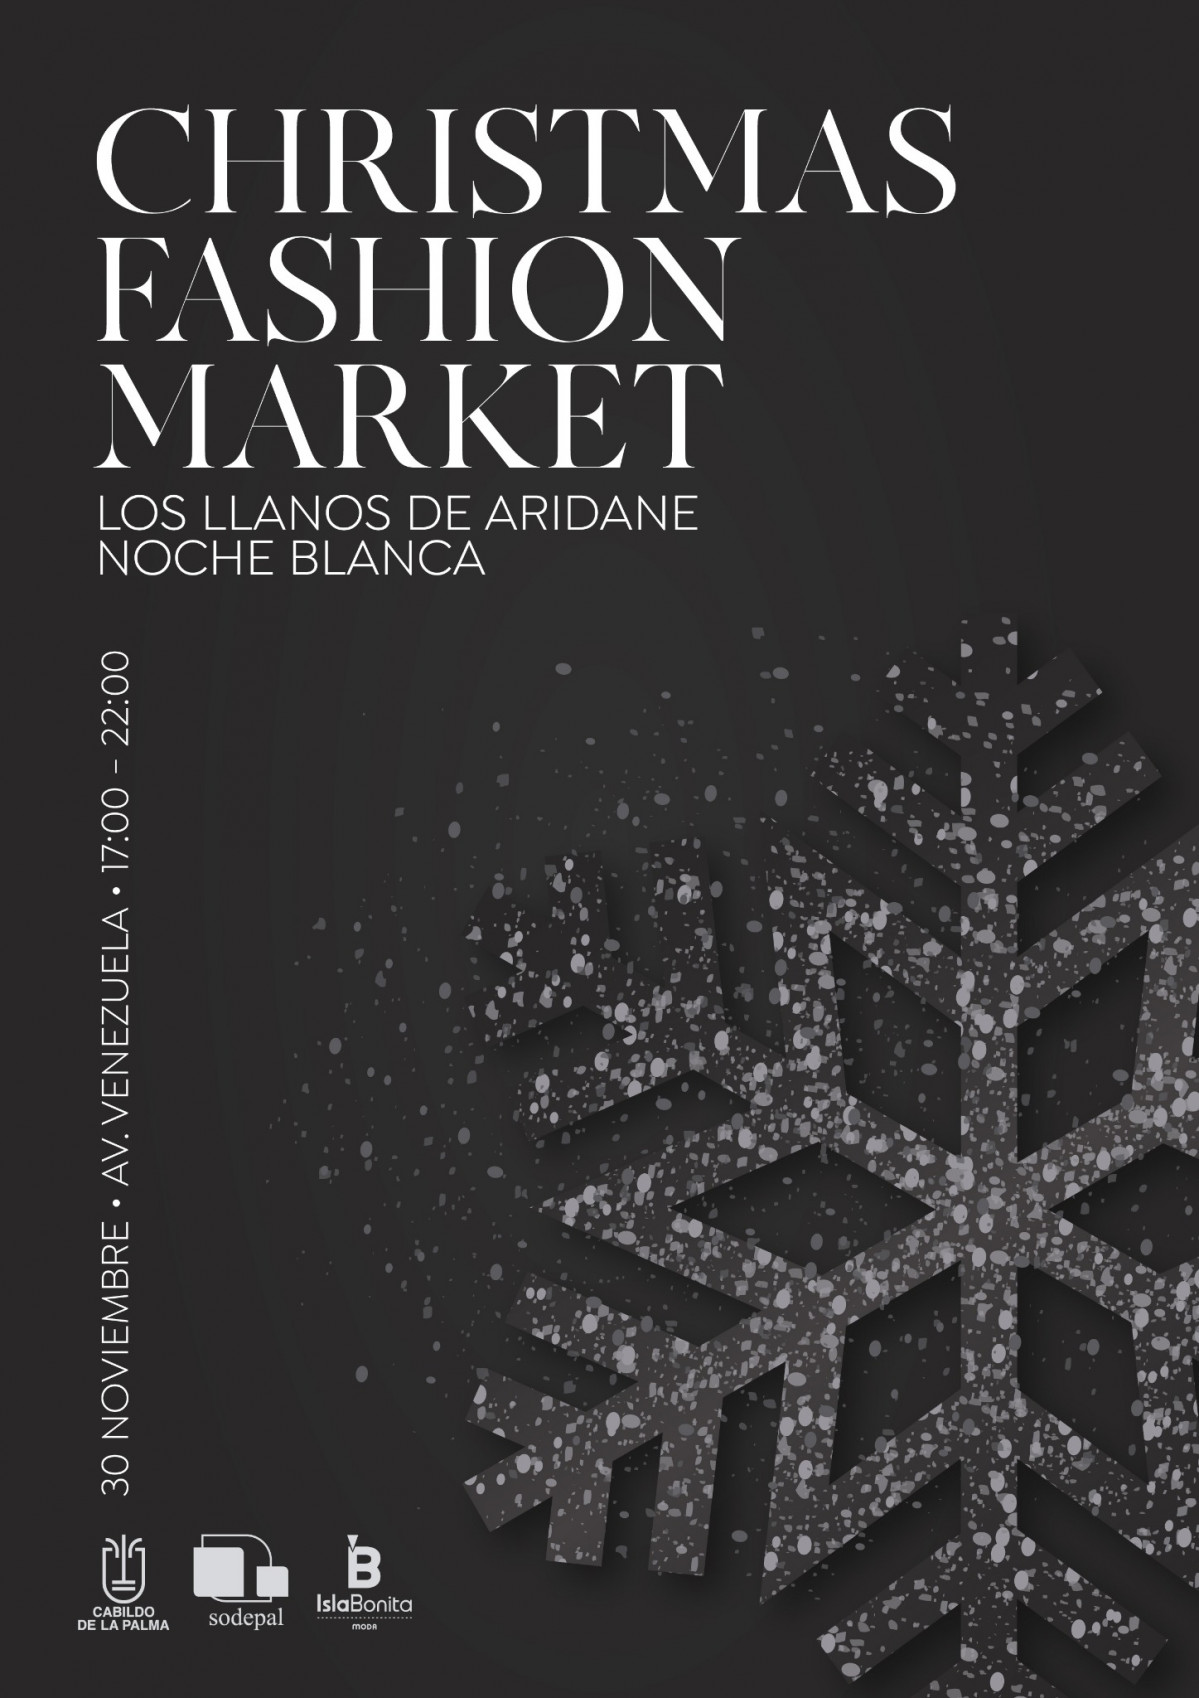 Christmas fashion market los llanos